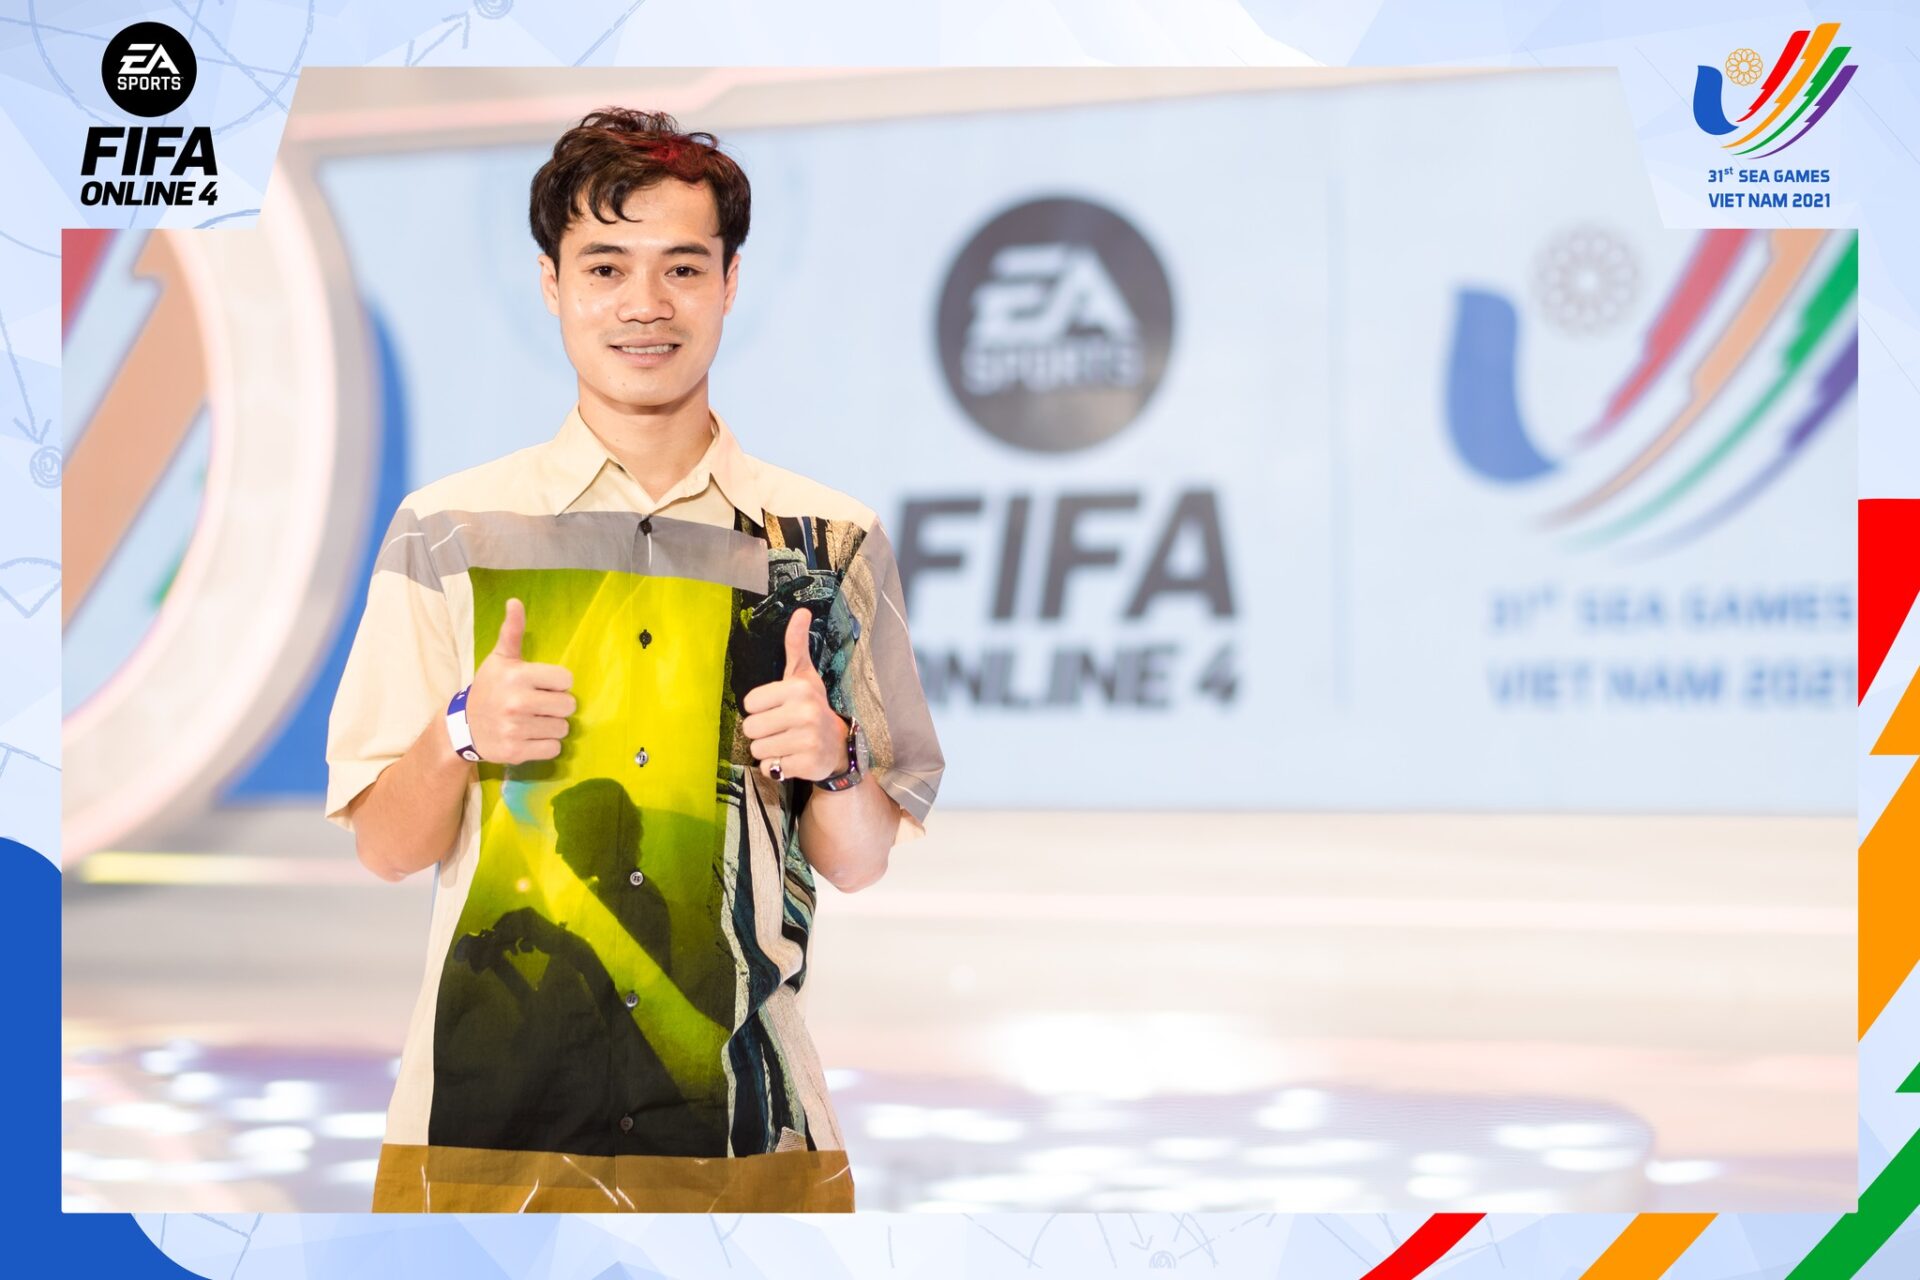 SEA Games 31: Văn Toàn bất ngờ xuất hiện, cổ vũ cho tuyển FIFA Online 4 Việt Nam